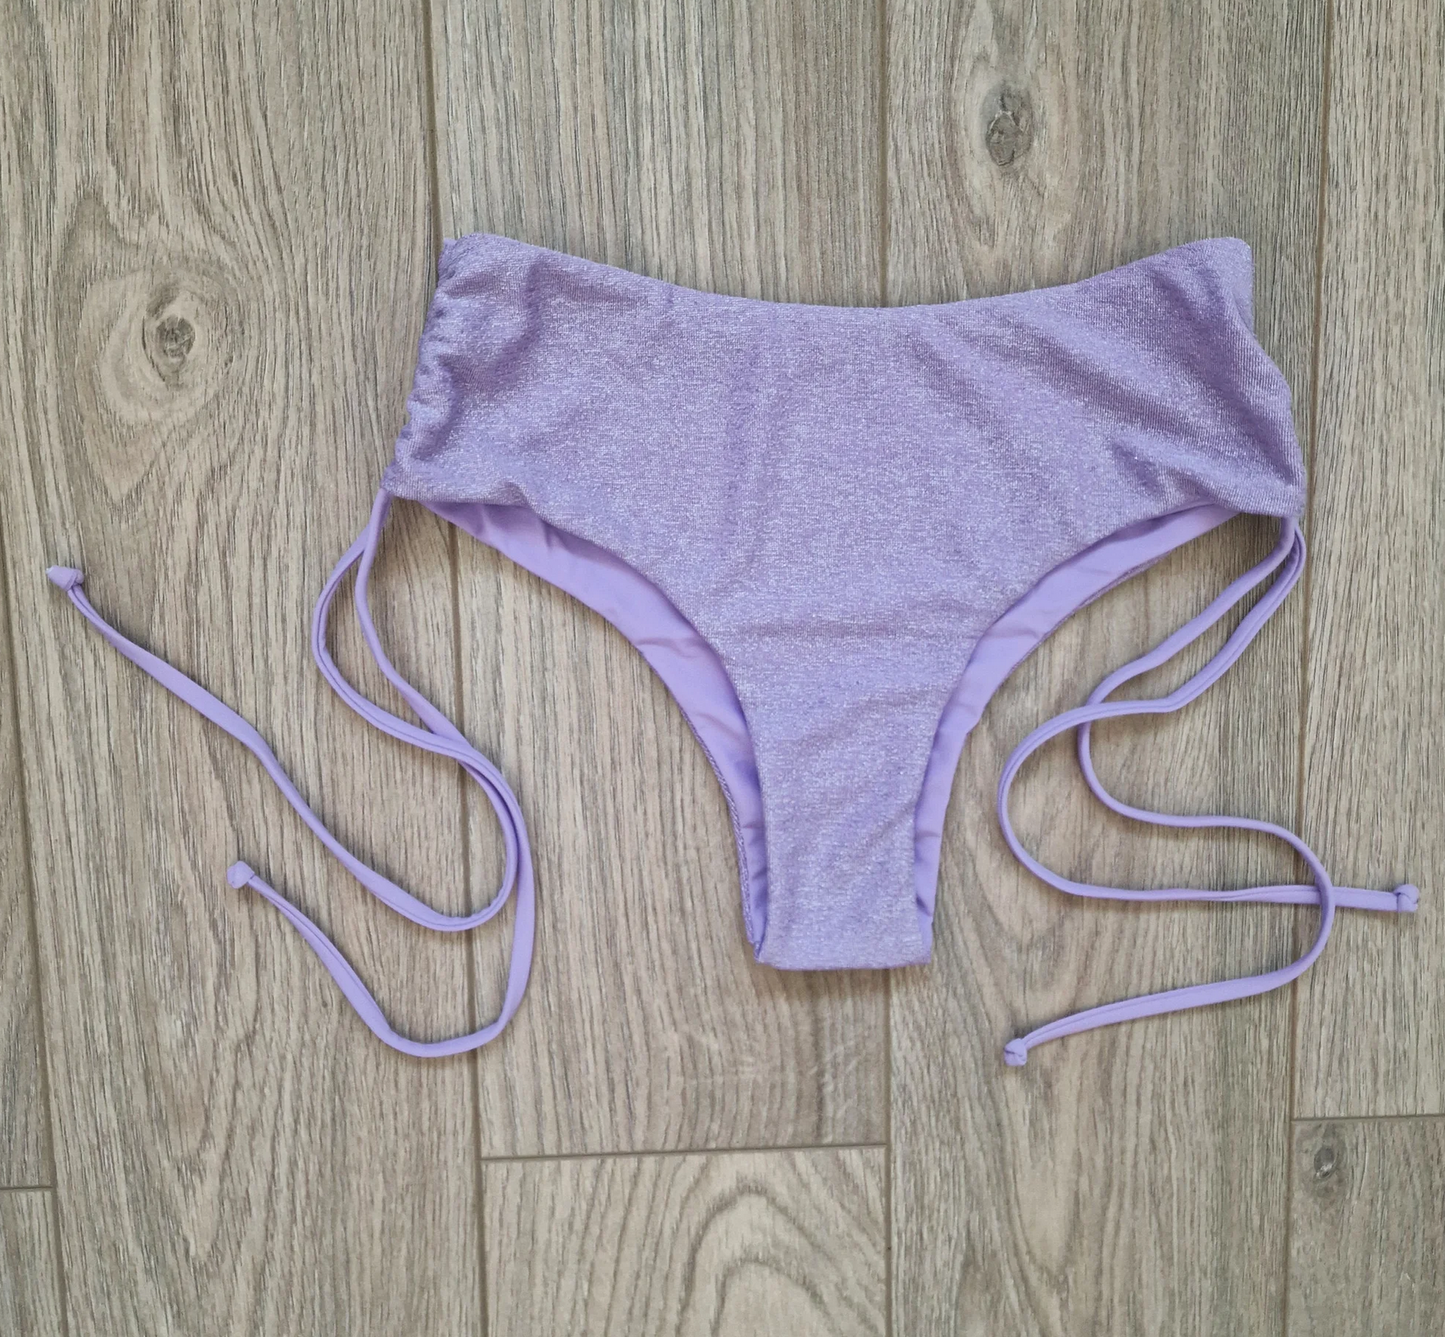 Cheeky Glitter shorts - Luscious Lilac